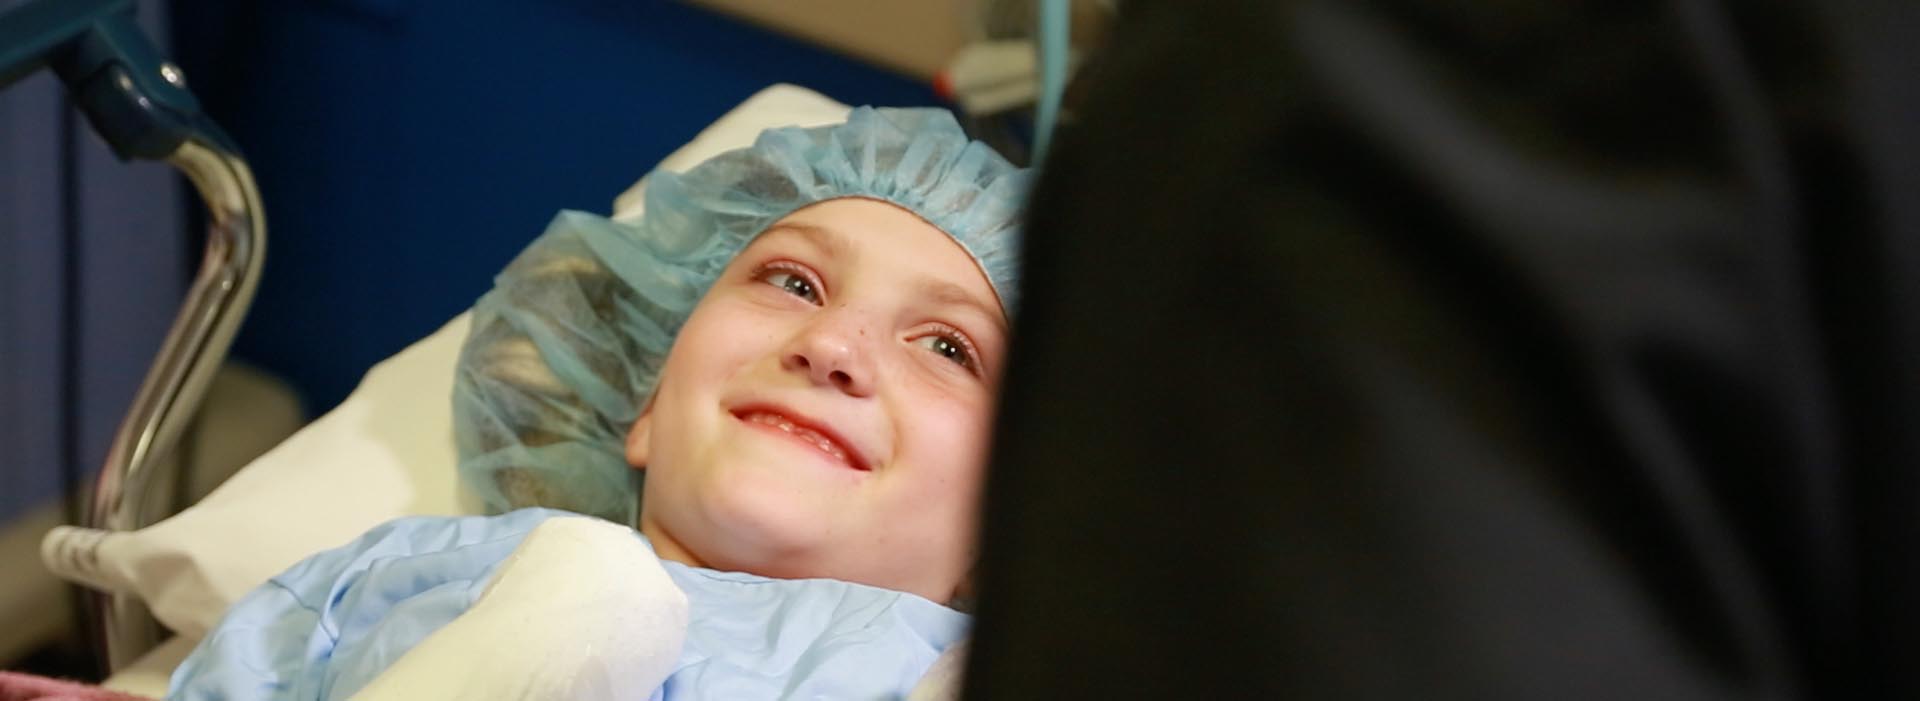 Un bambino paziente sorride a qualcuno fuori dall'inquadratura